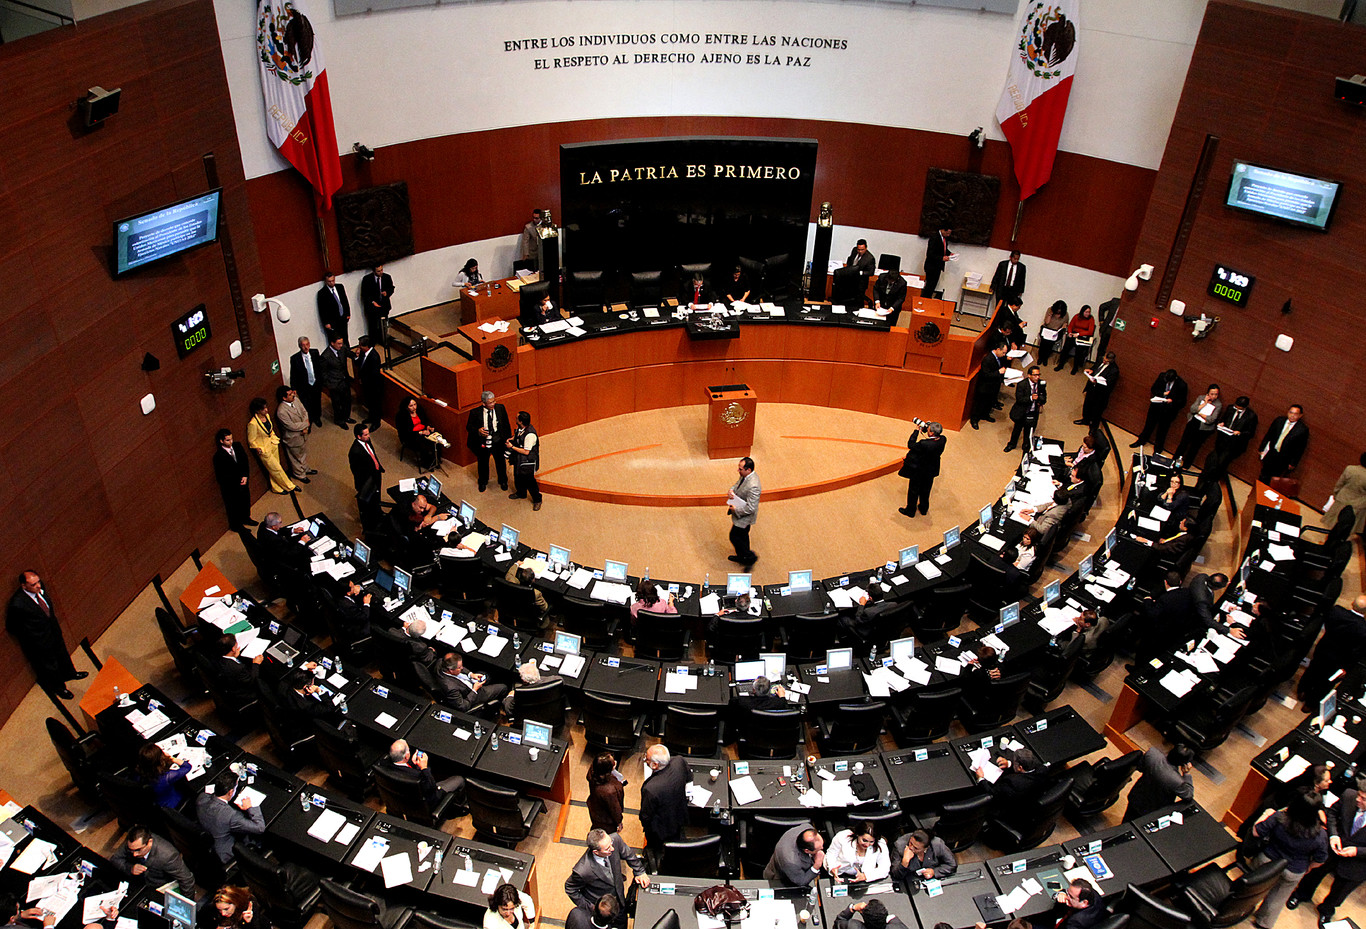 Tomarán prueba de Covid-19 a todo el senado este lunes | El Imparcial de Oaxaca